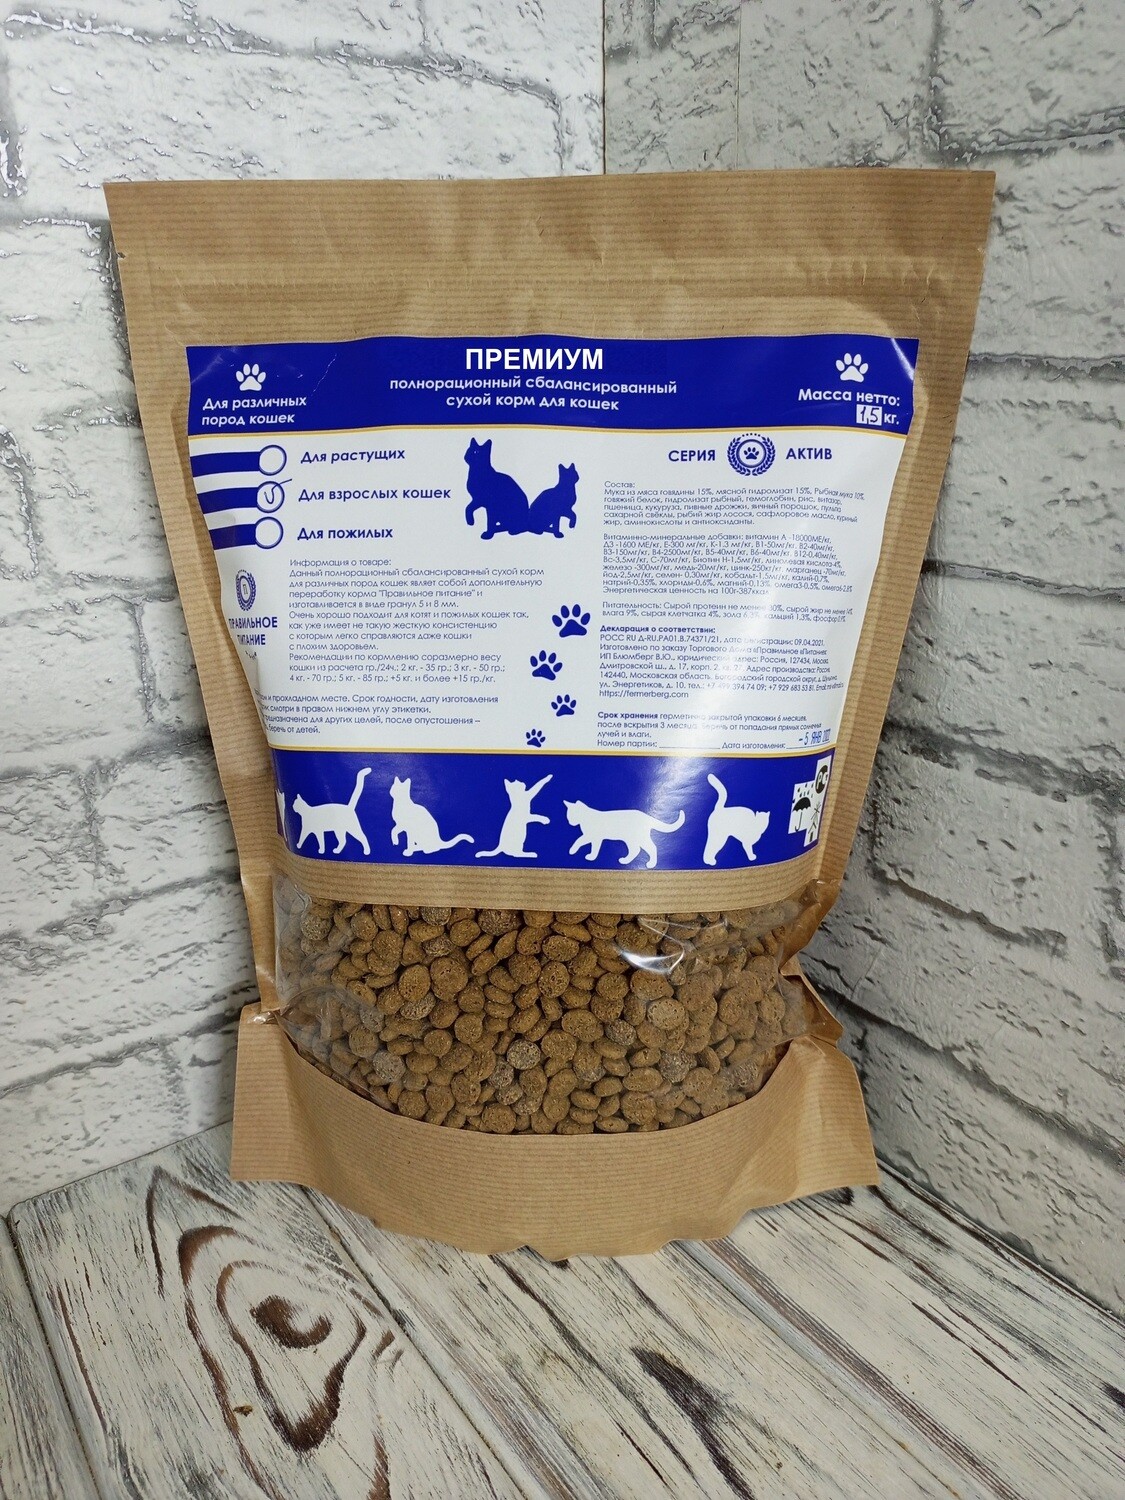 Полнорационный сухой корм для кошек класса Премиум - "Мясное ассорти", стоимость за 1 кг.